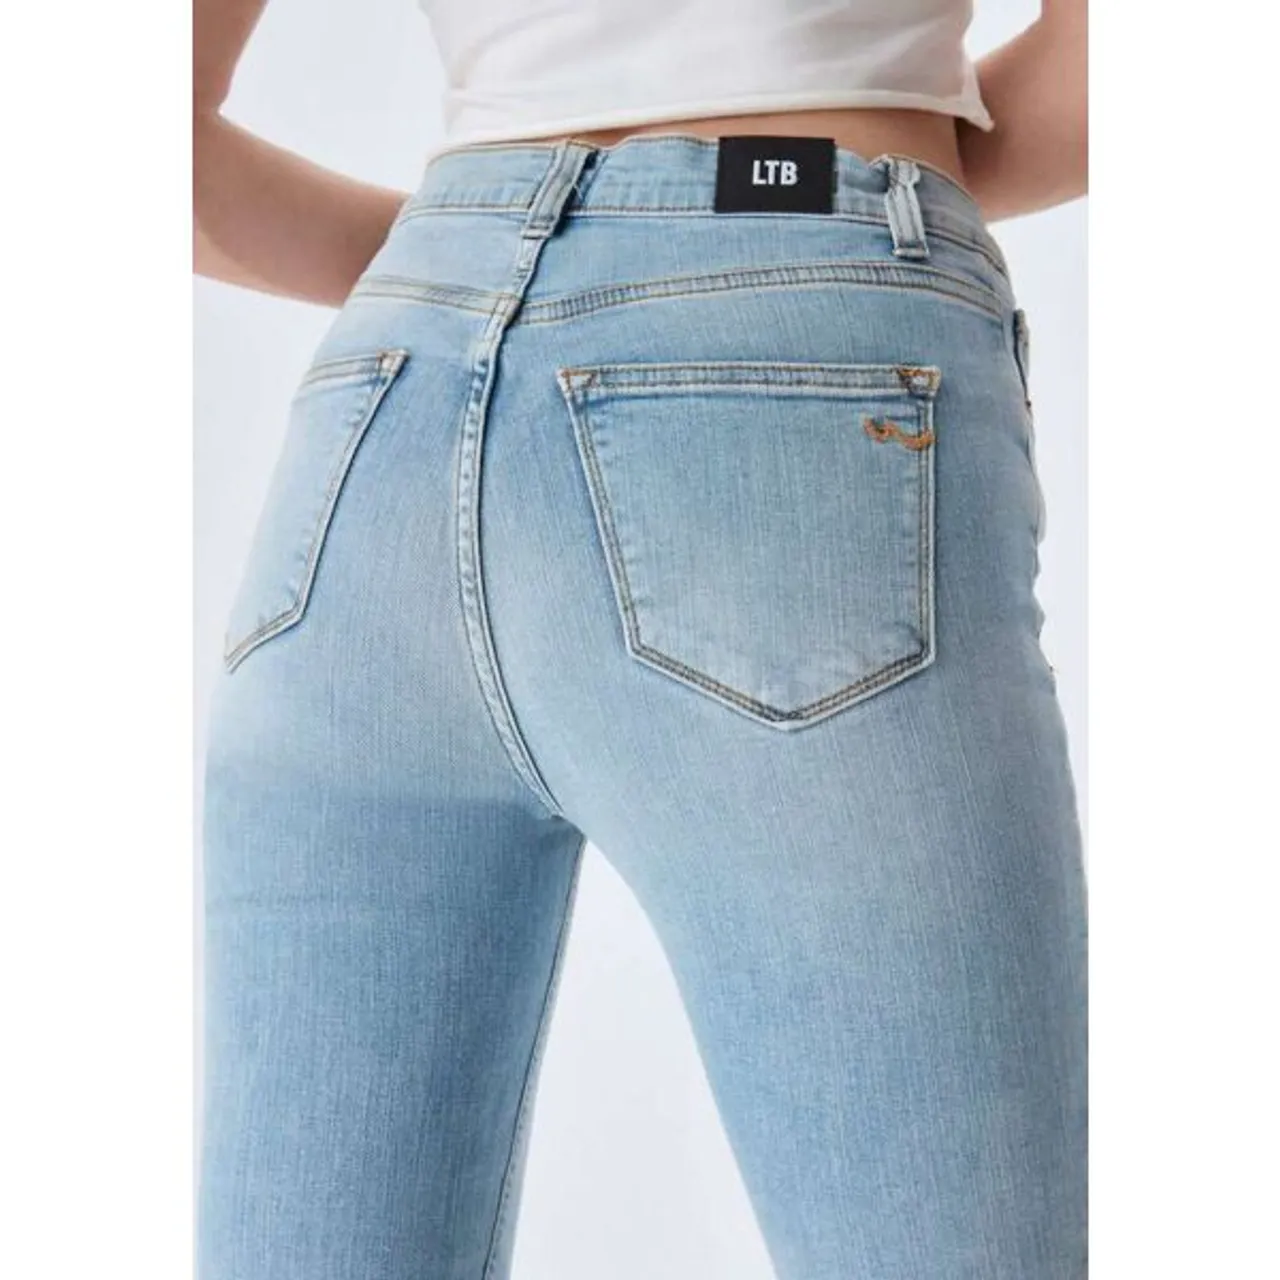 Slim-fit-Jeans LTB "Amy X" Gr. 31, Länge 32, blau (vonda undama) Damen Jeans Röhrenjeans in angesagter Waschung